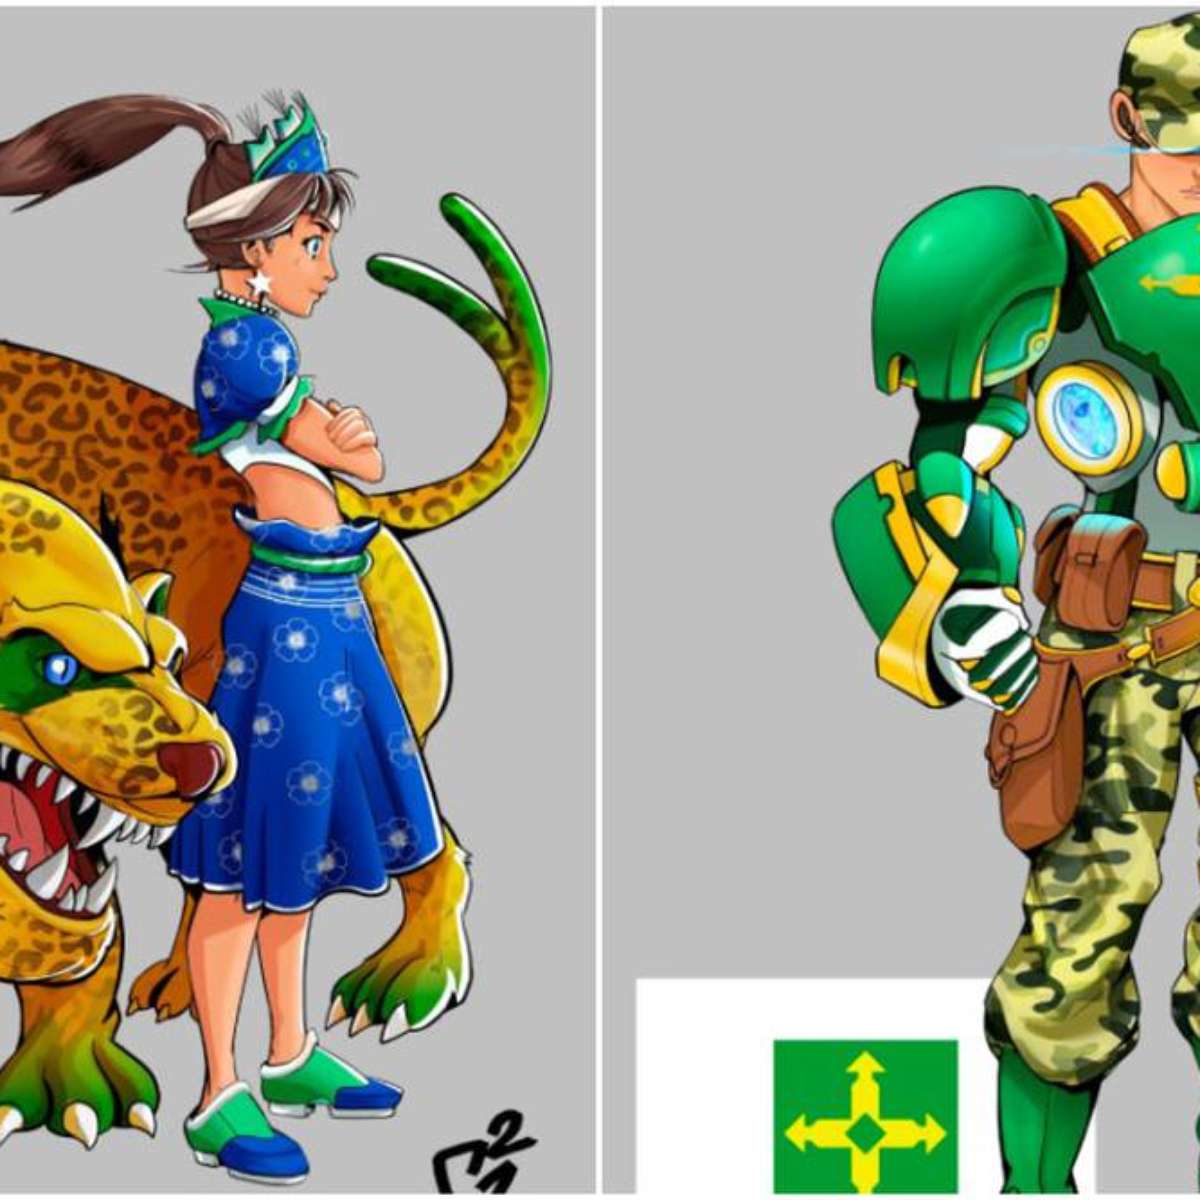 Brasileiro cria artes de personagens de game inspirados em estados, esports